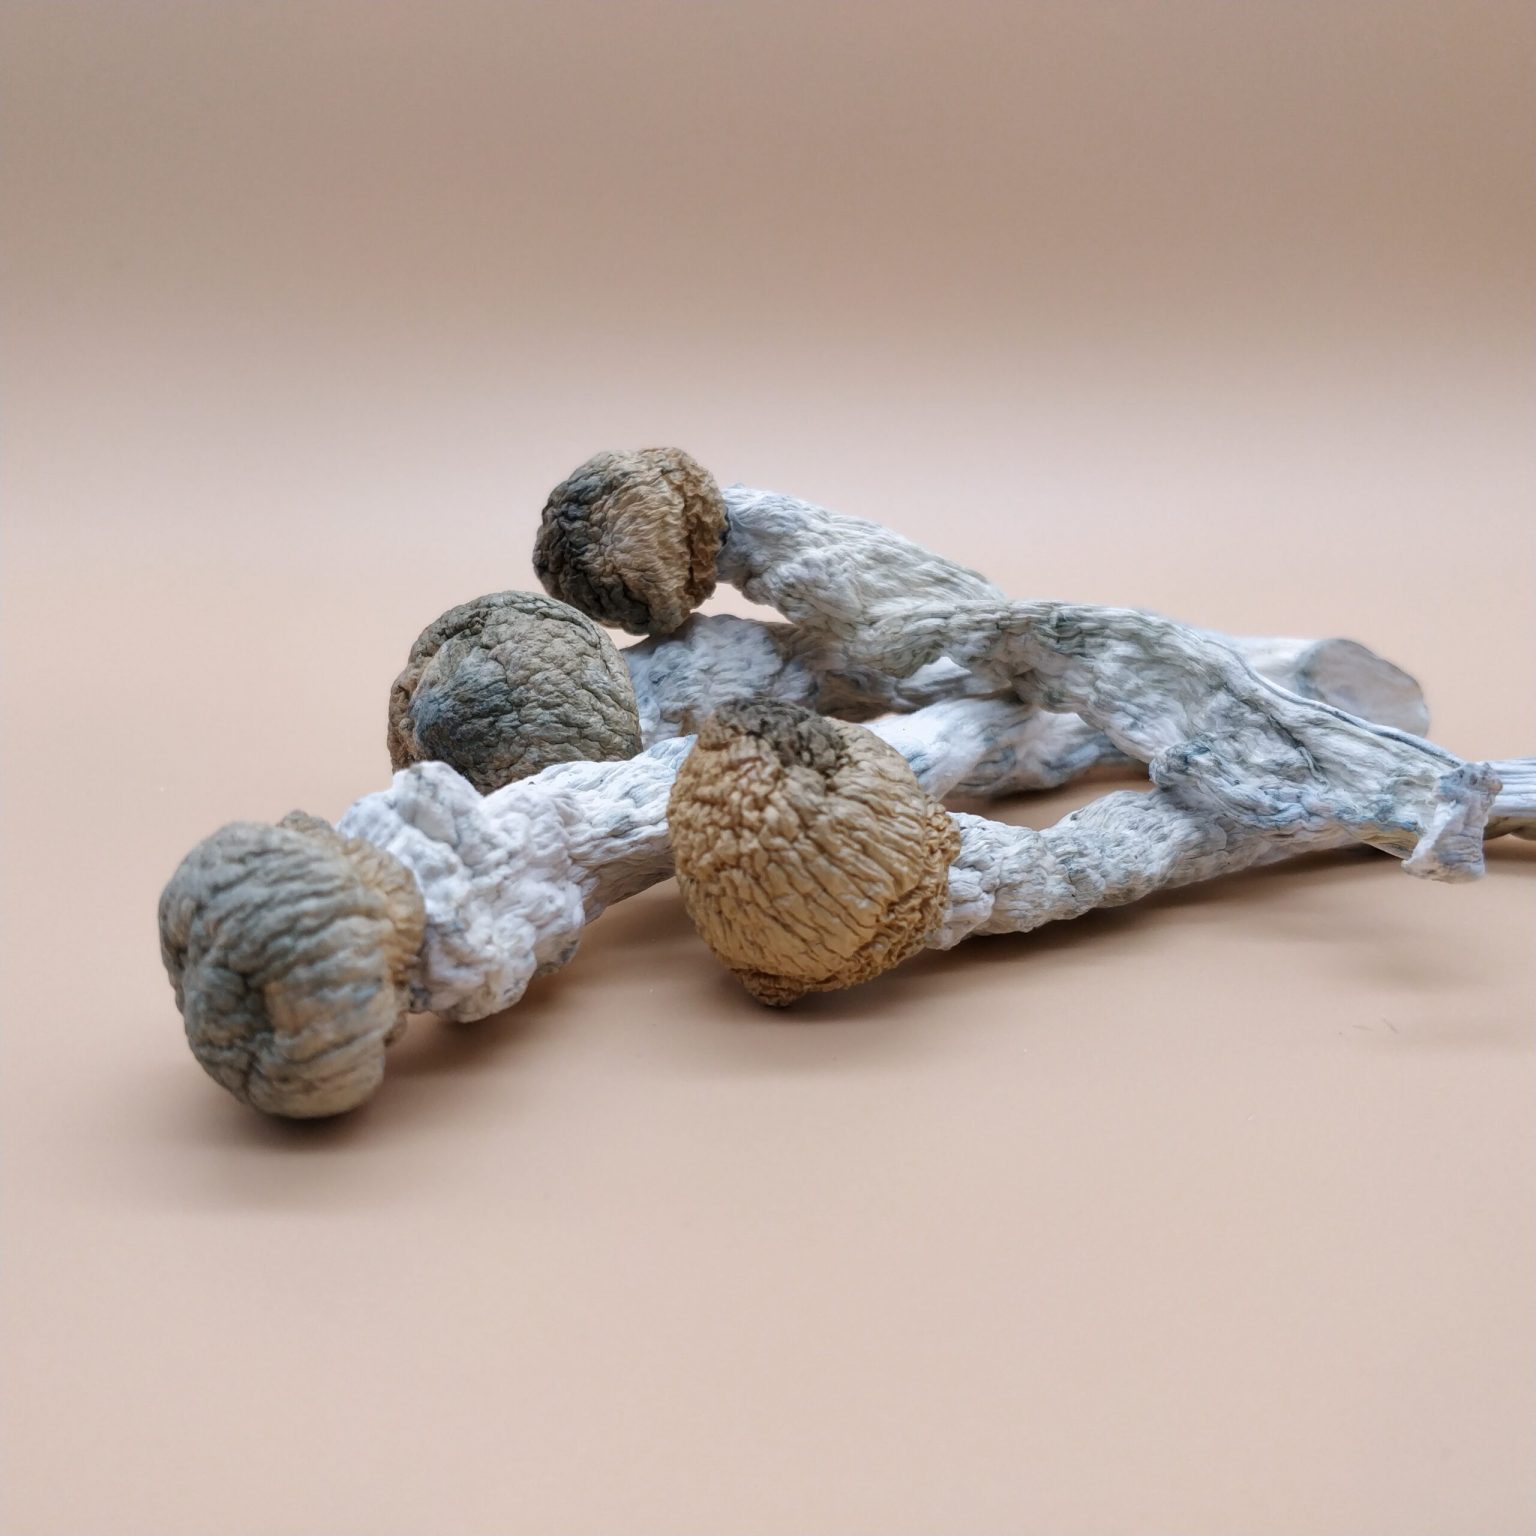 SHAFAA Penis Envy Dried Magic Mushrooms